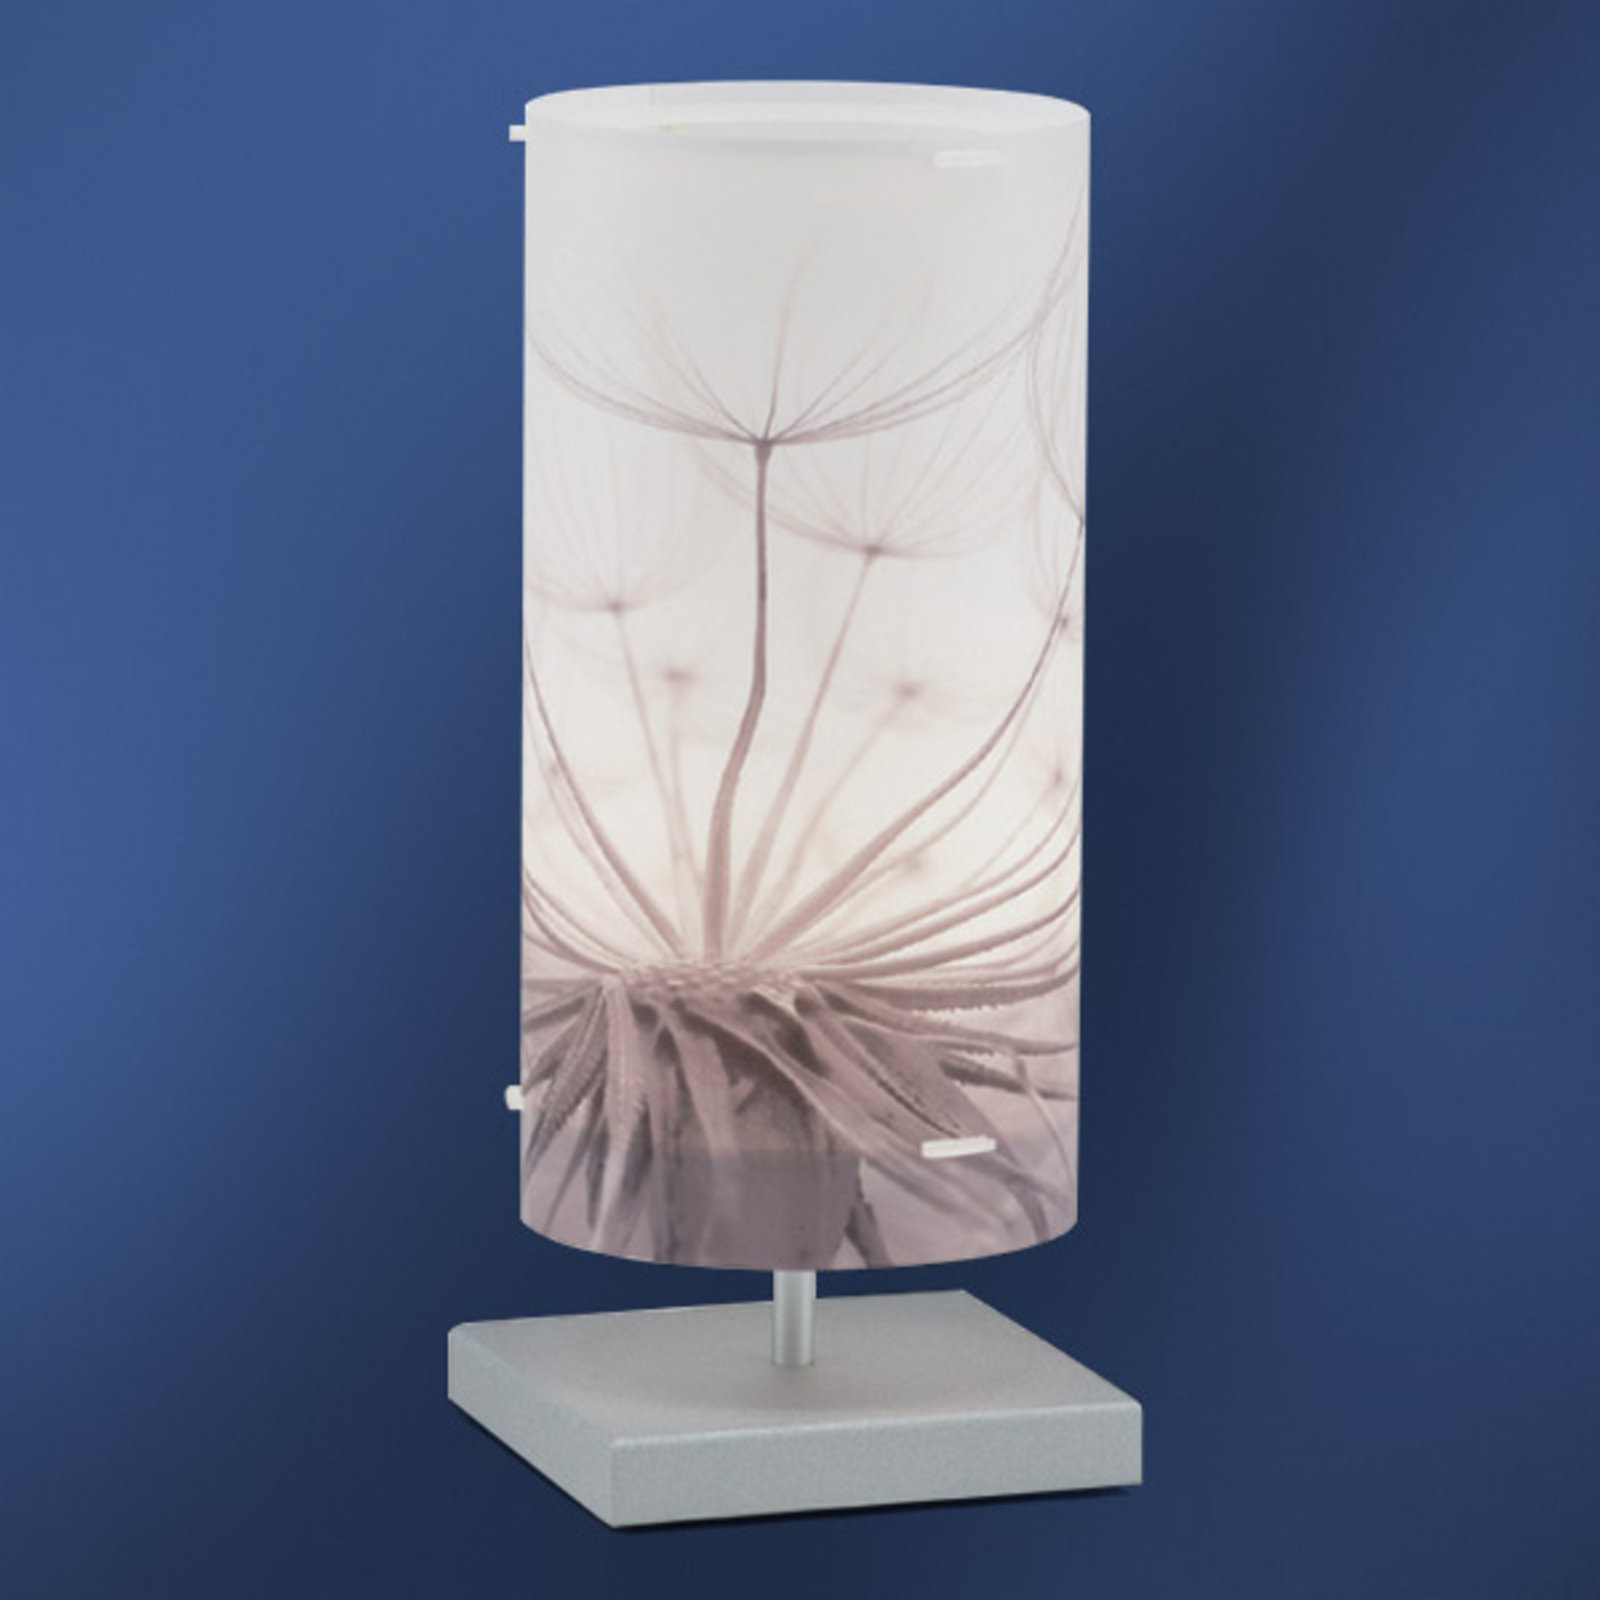 Dandelion - Lampa stołowa o naturalnym wzornictwie